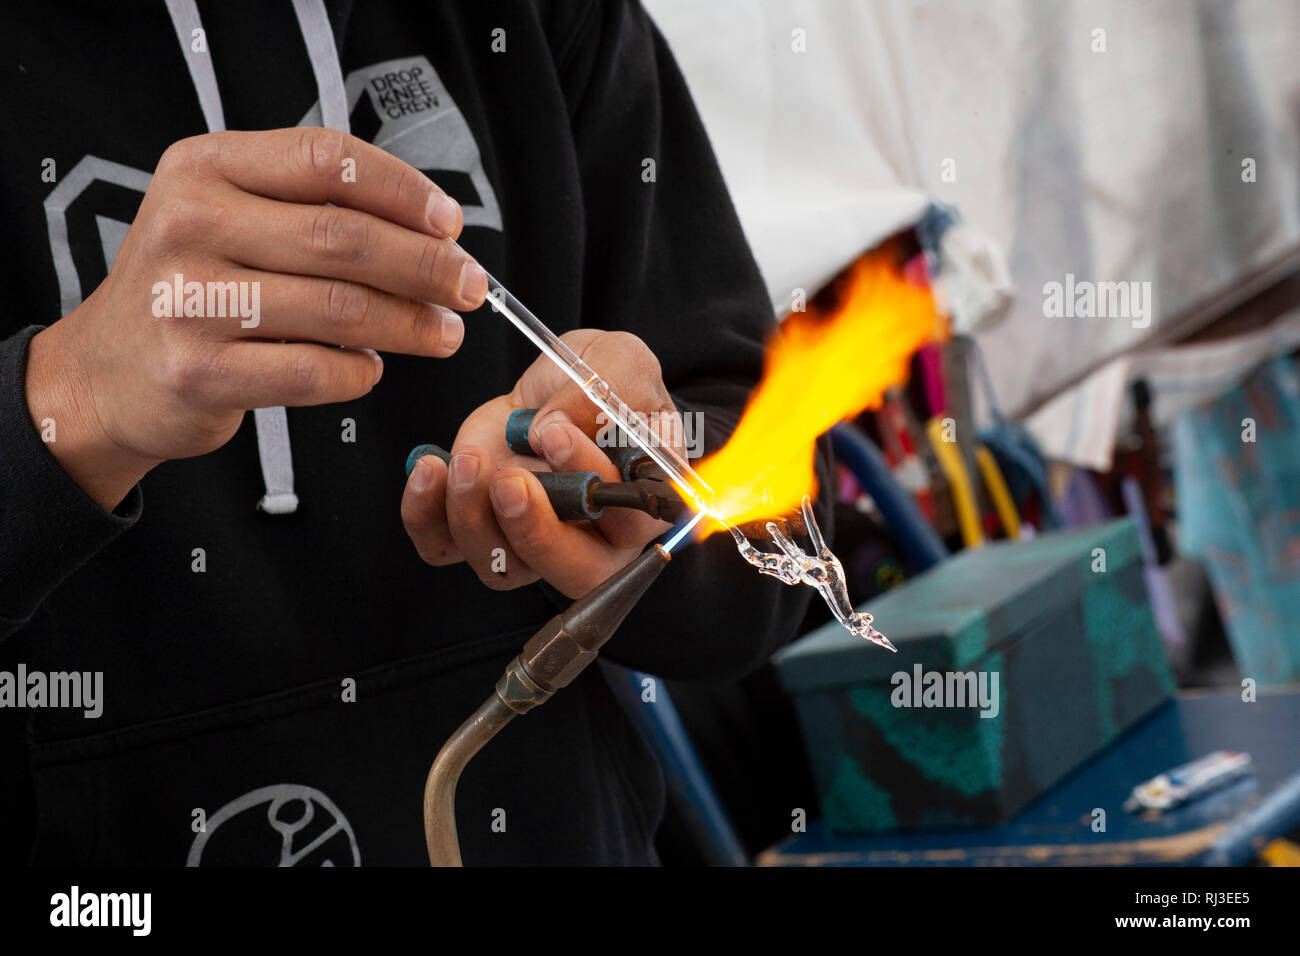 Man making glass sculpture - hand blown glass artistry Stock Photo